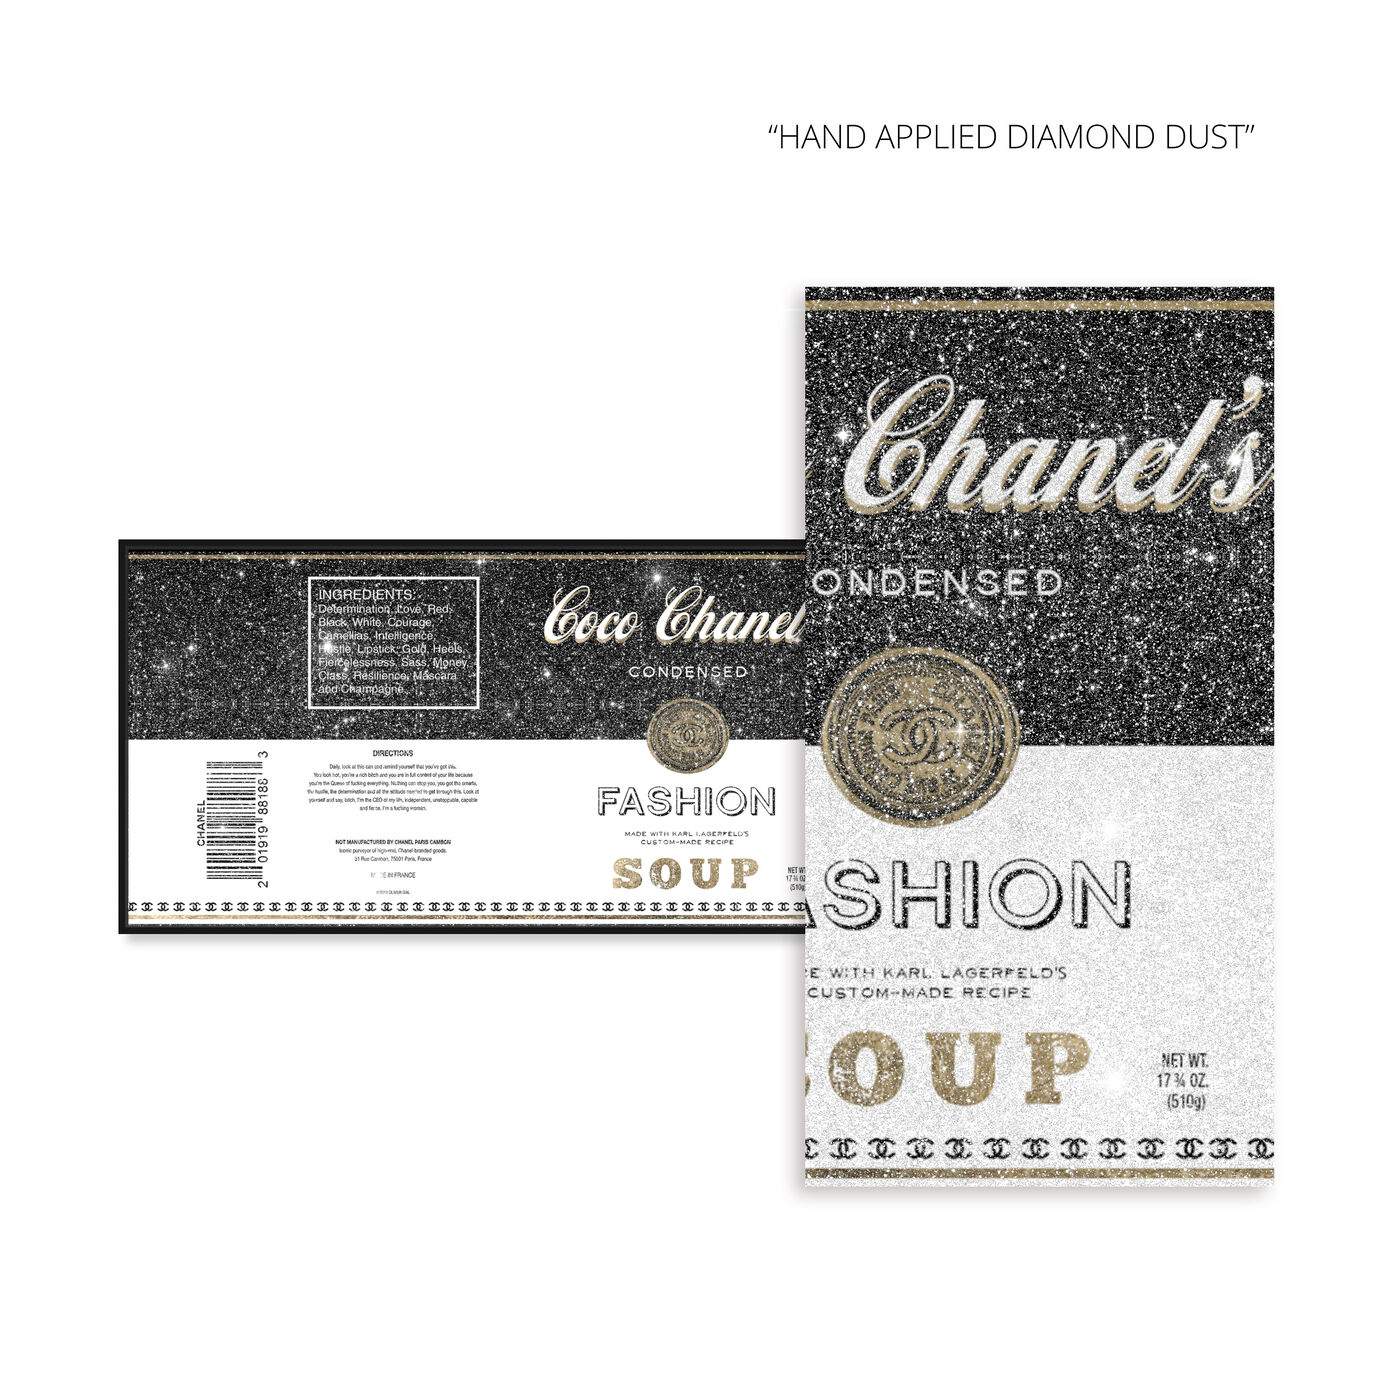 Fashion Soup Label: Diamond Dust™